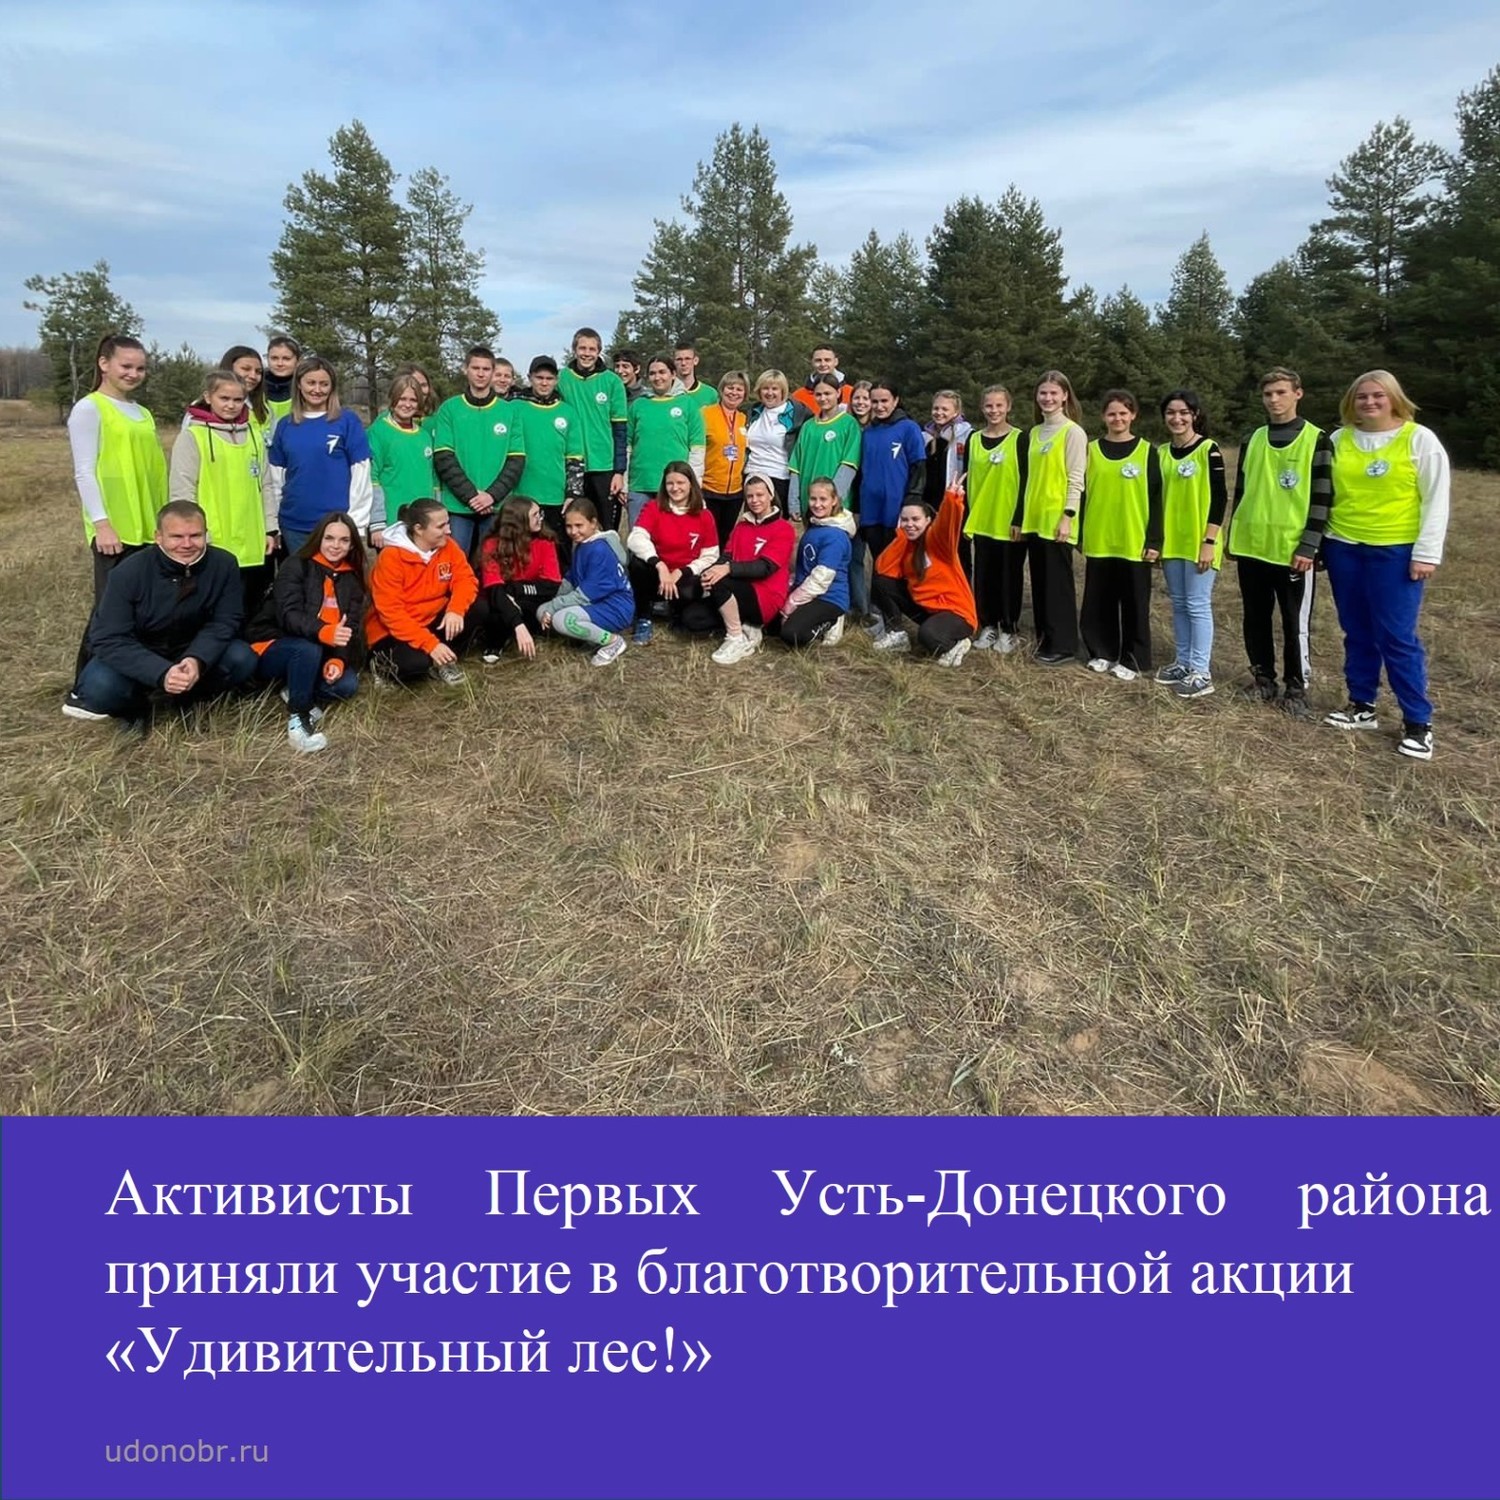 Активисты Первых Усть-Донецкого района приняли участие в благотворительной акции «Удивительный лес!»